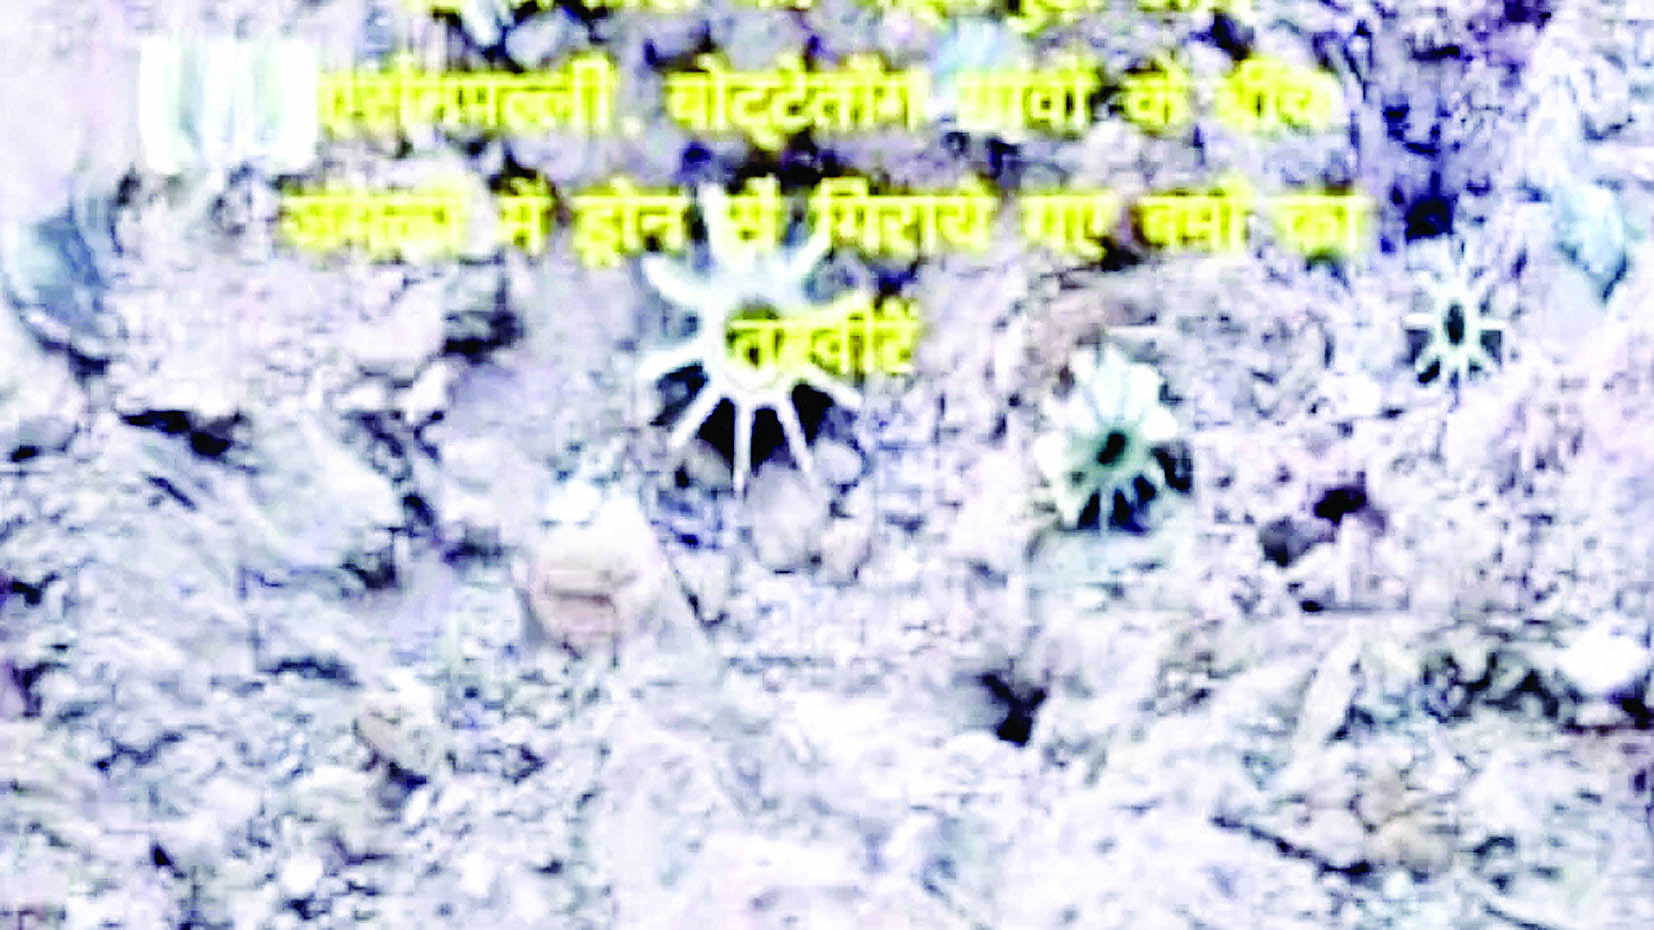 सुकमा-बीजापुर सरहद पर बमबारी के आरोप, माओवादियों ने जारी की तस्वीर